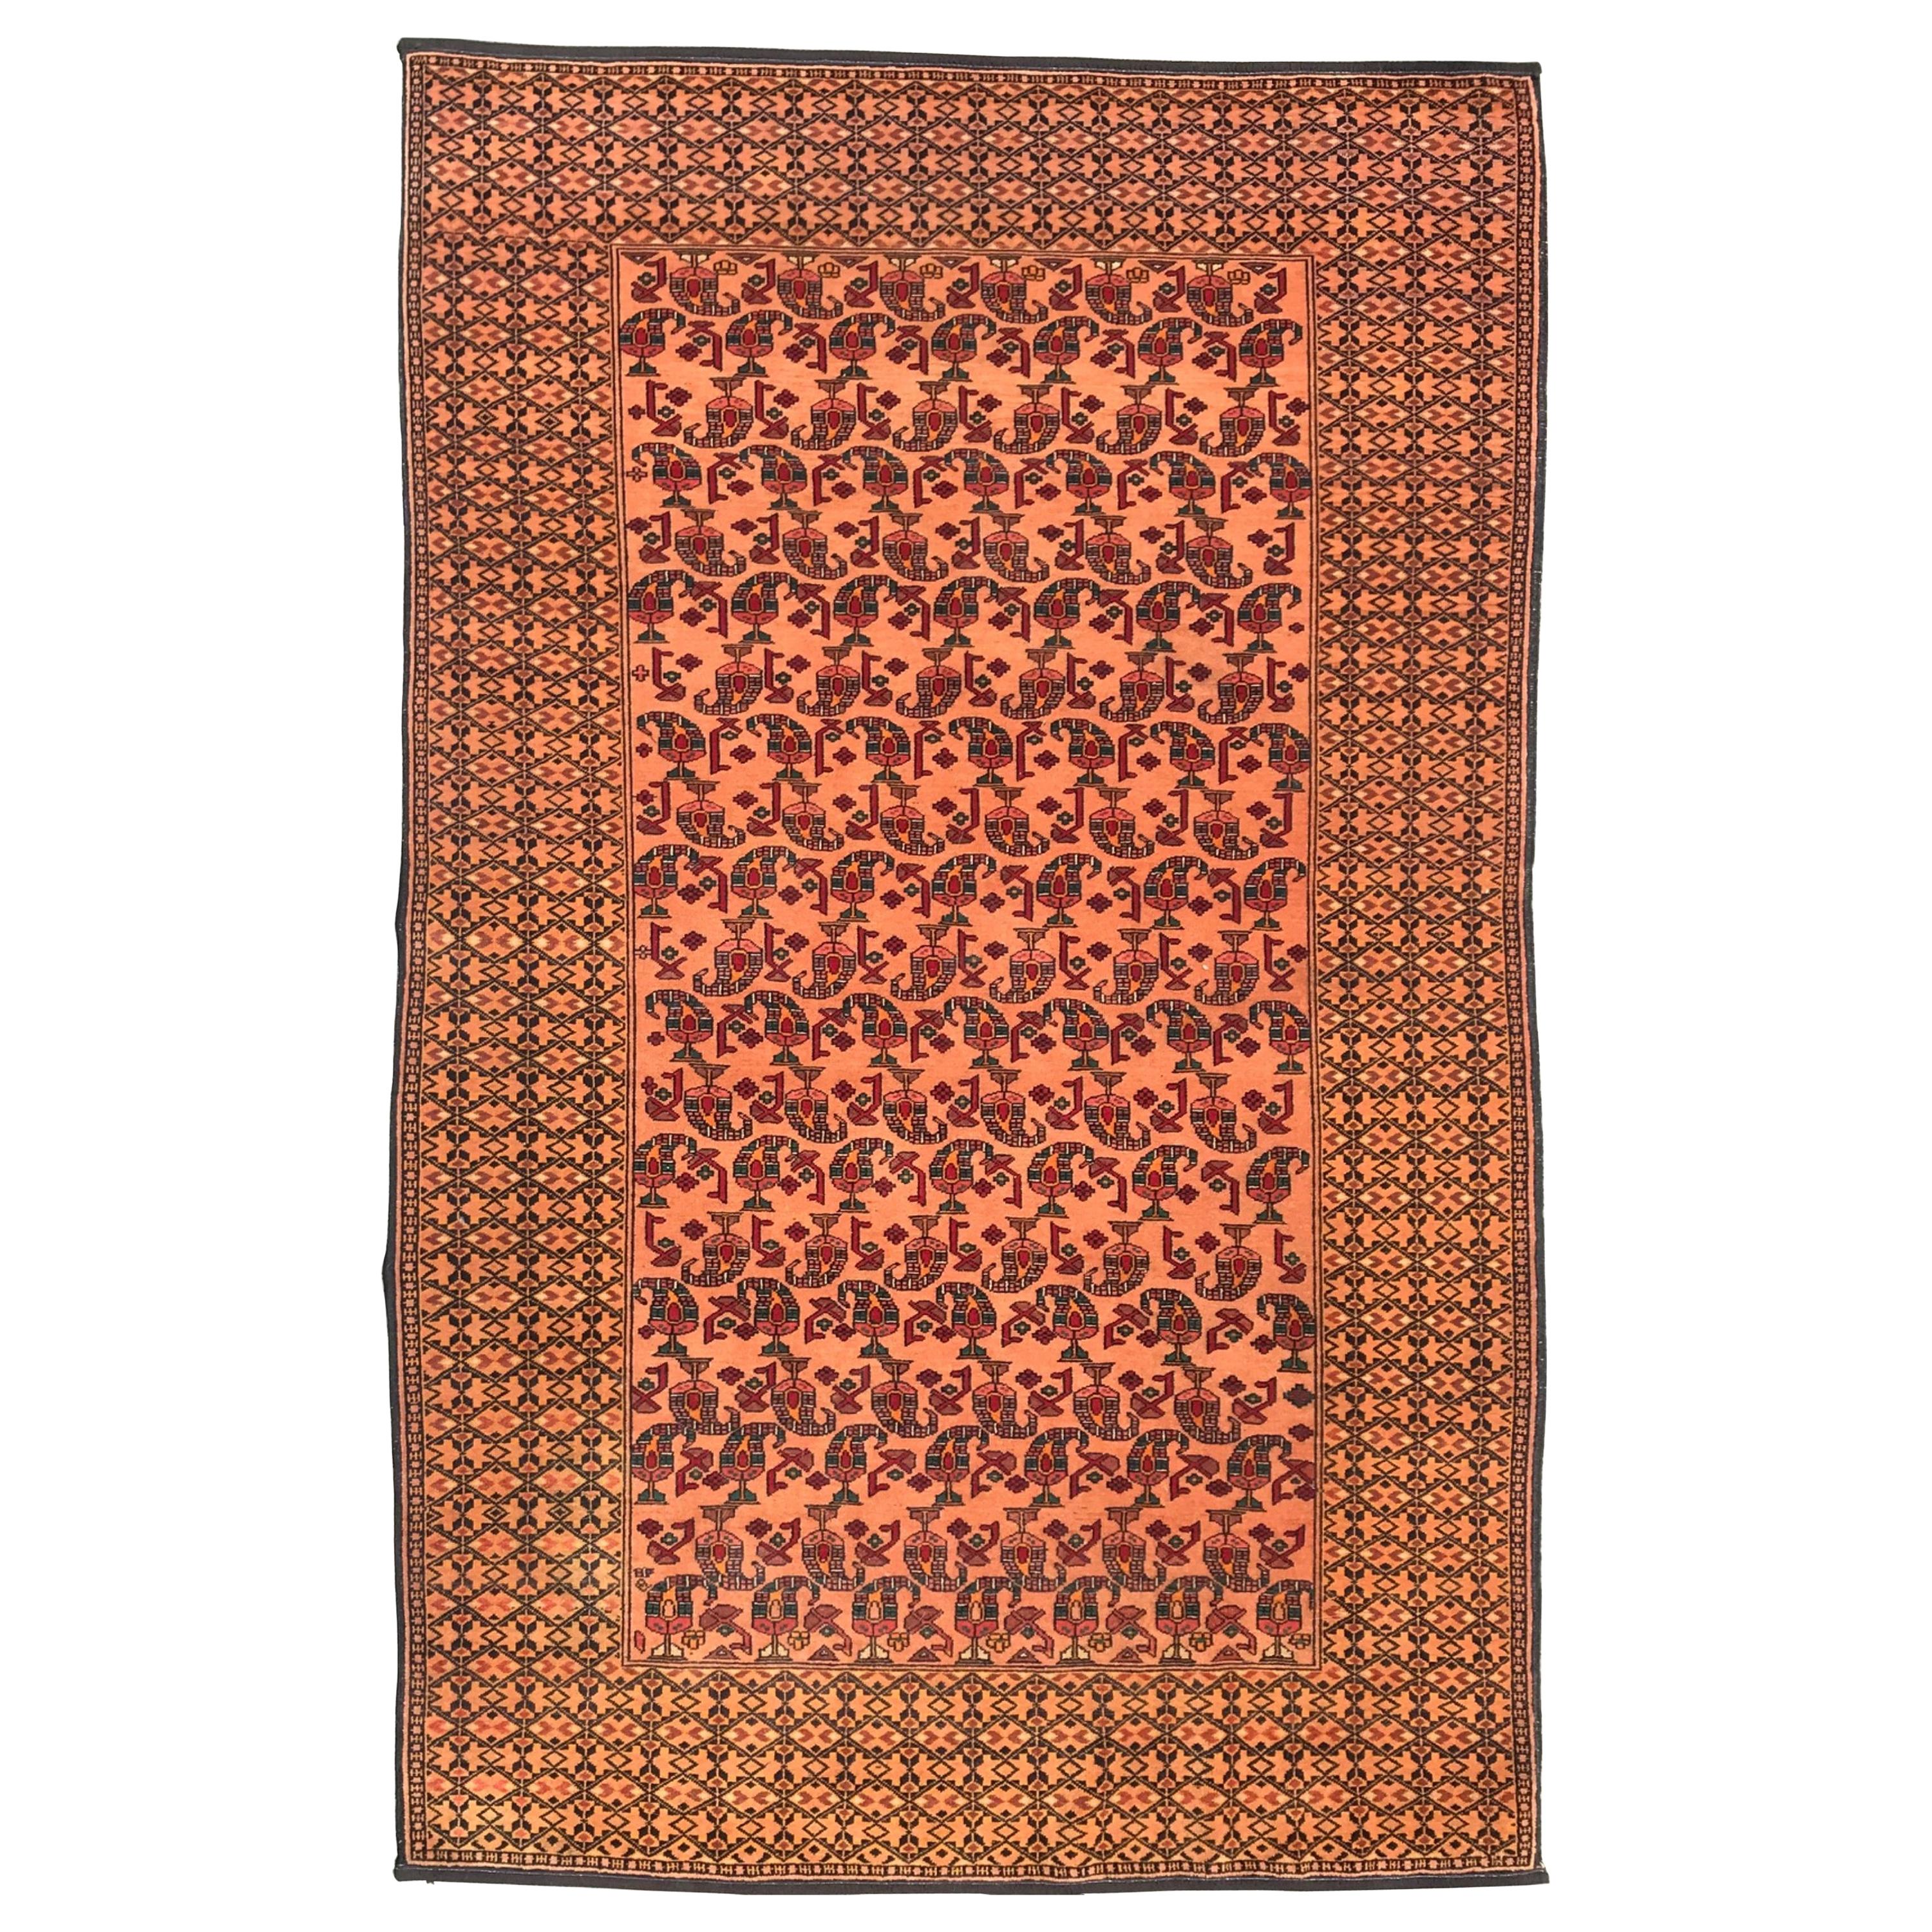 Handgewebter persischer Bashir-Teppich aus der Mitte des 20. Jahrhunderts